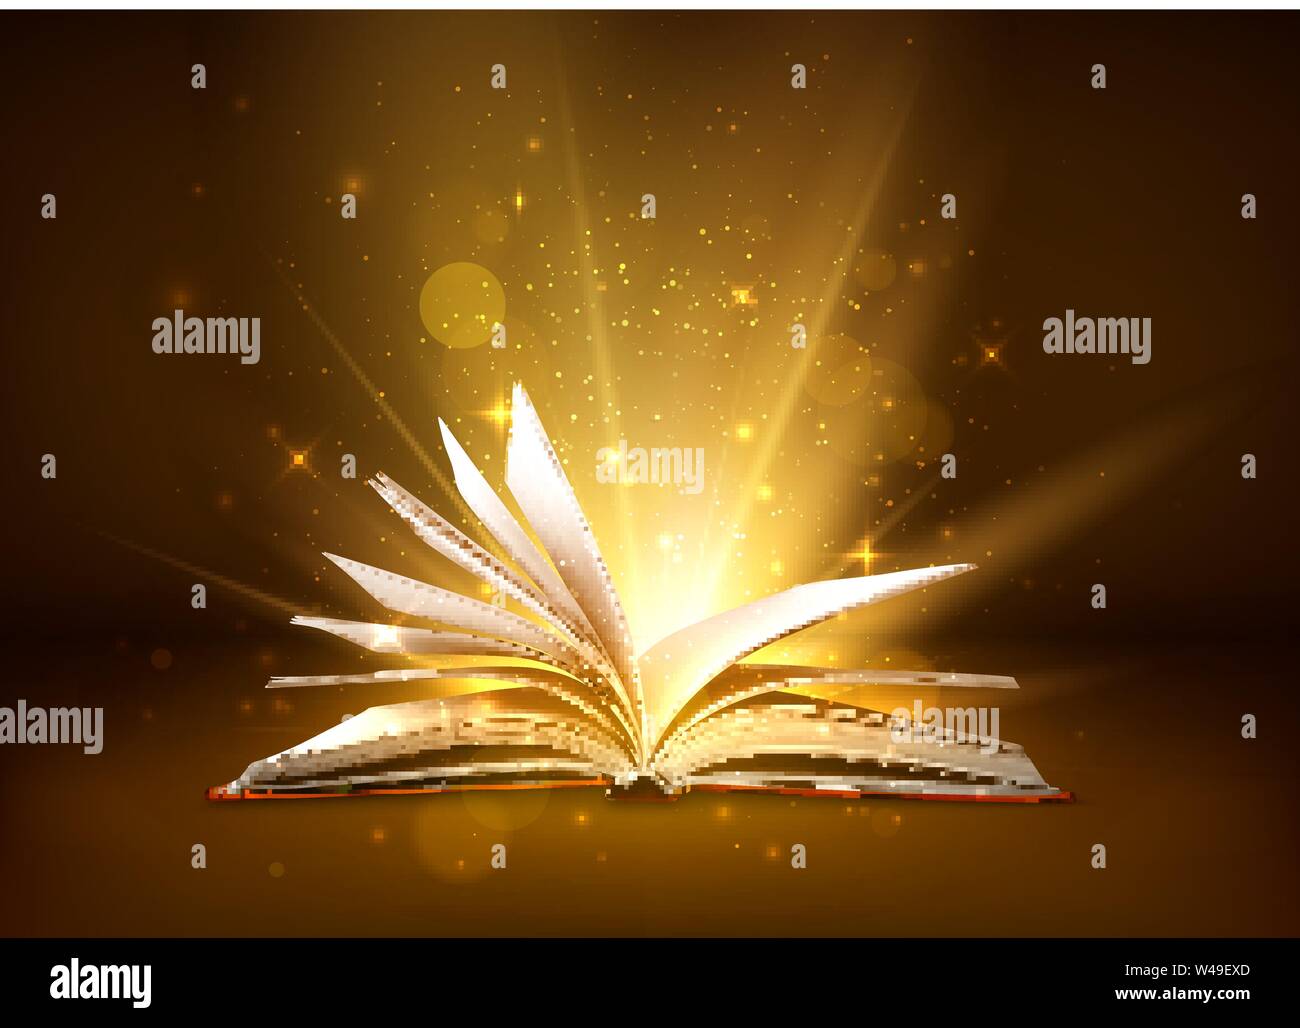 Geheimnis offenes Buch mit glänzenden Seiten. Fantasy Buch mit magische Licht funkelt und Sterne. Vector Illustration Stock Vektor